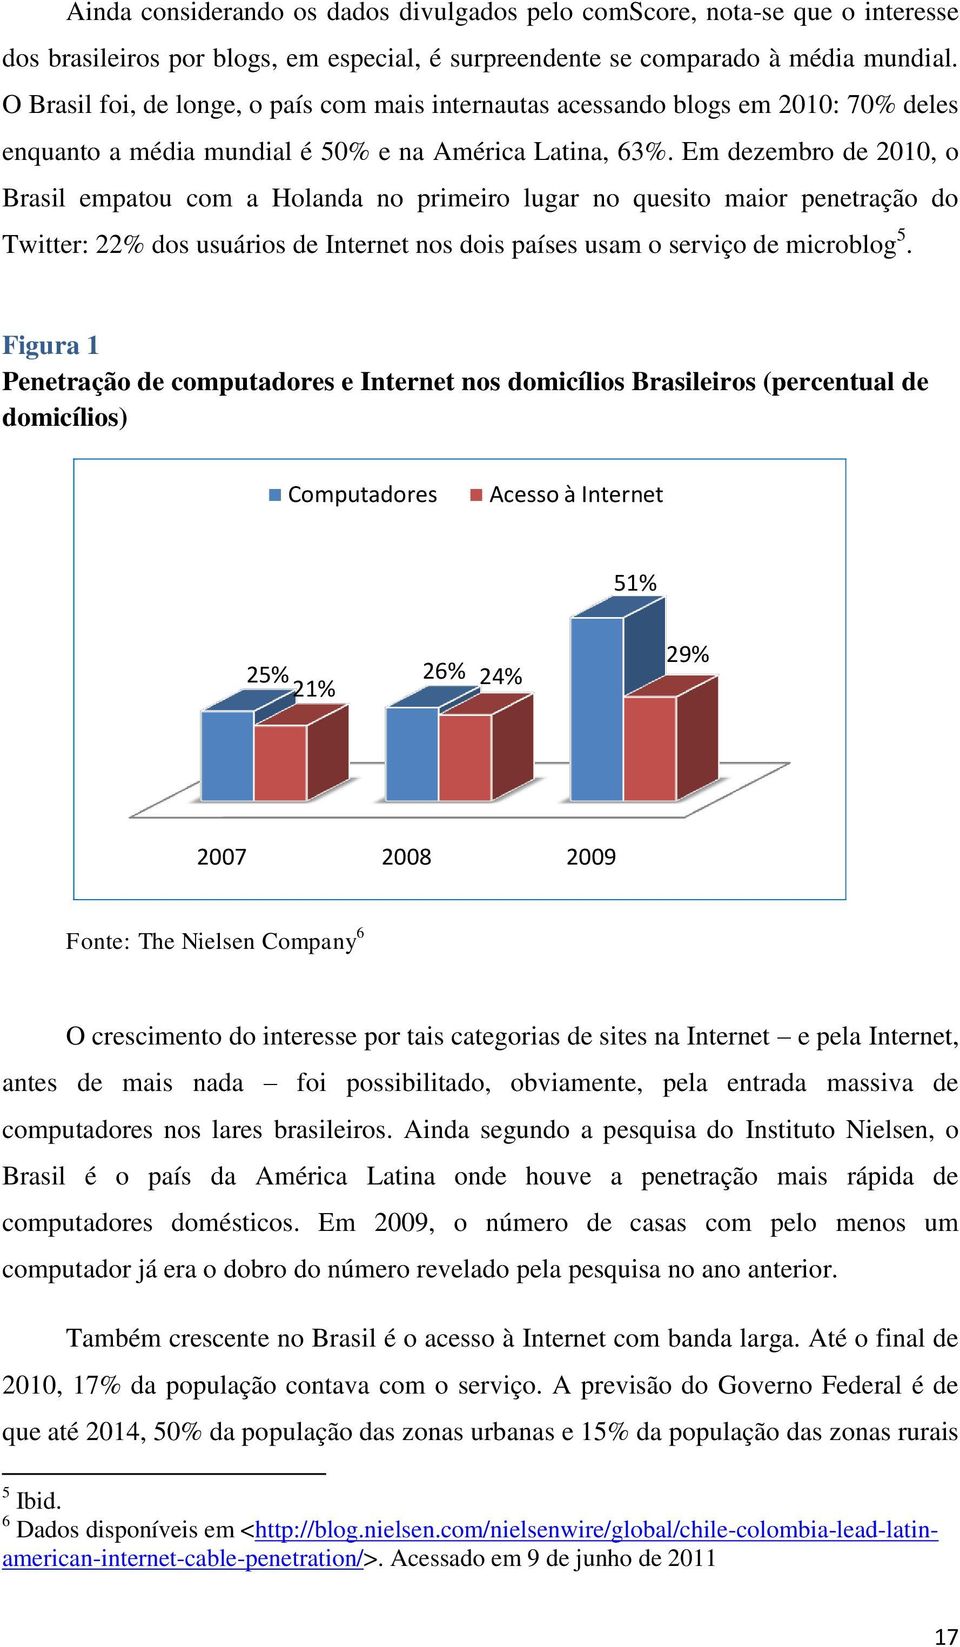 Em dezembro de 2010, o Brasil empatou com a Holanda no primeiro lugar no quesito maior penetração do Twitter: 22% dos usuários de Internet nos dois países usam o serviço de microblog 5.